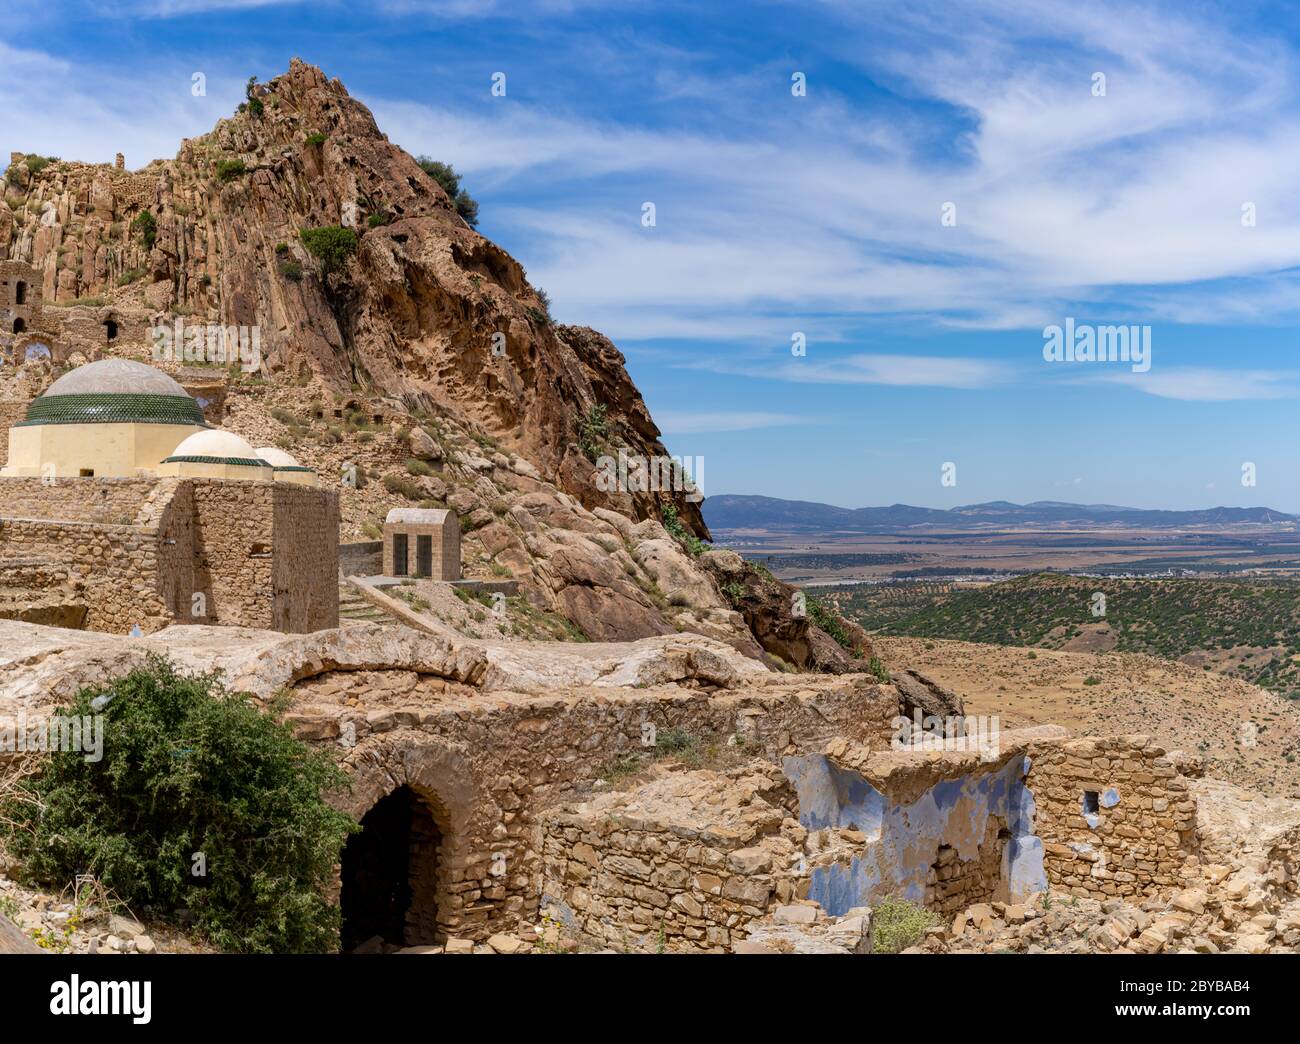 The abandonned berber village of zriba, tunisia Stock Photo